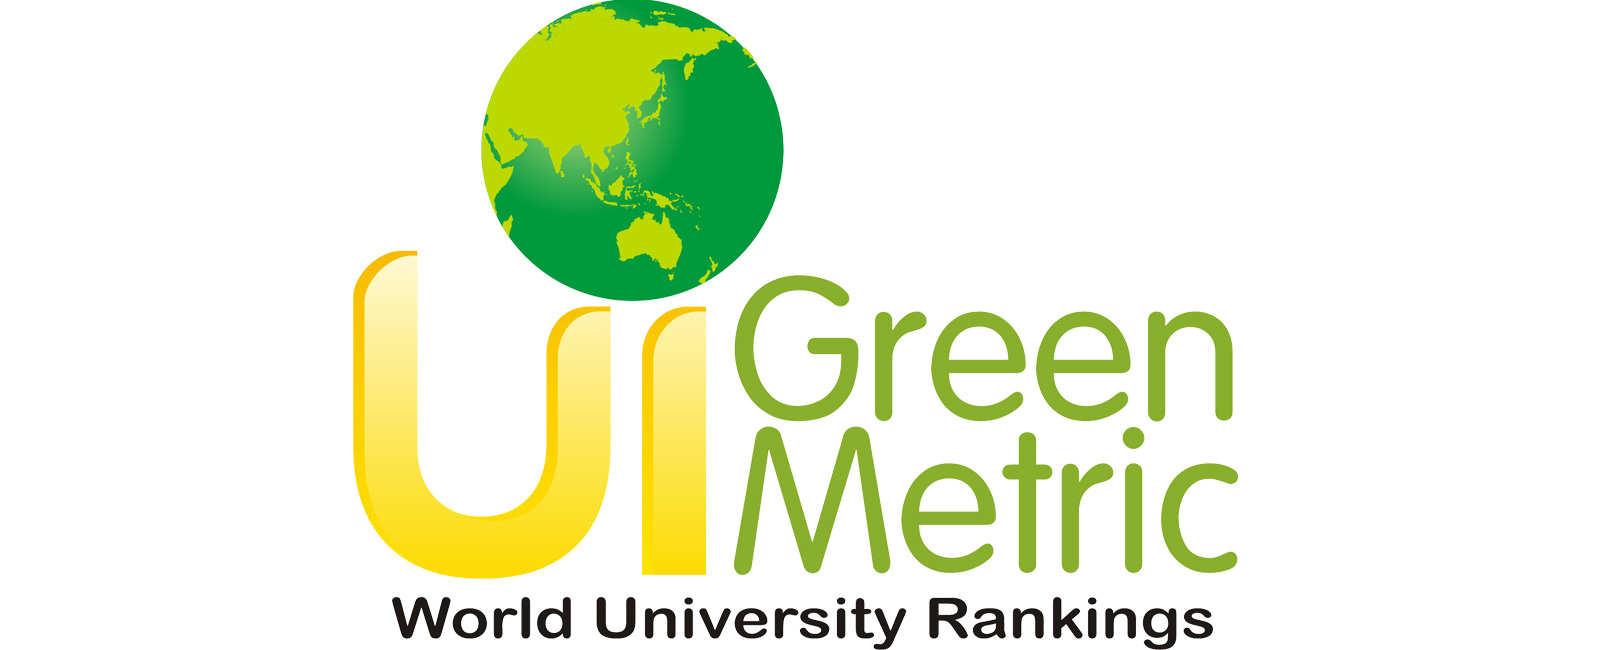 Лого UI GreenMetric